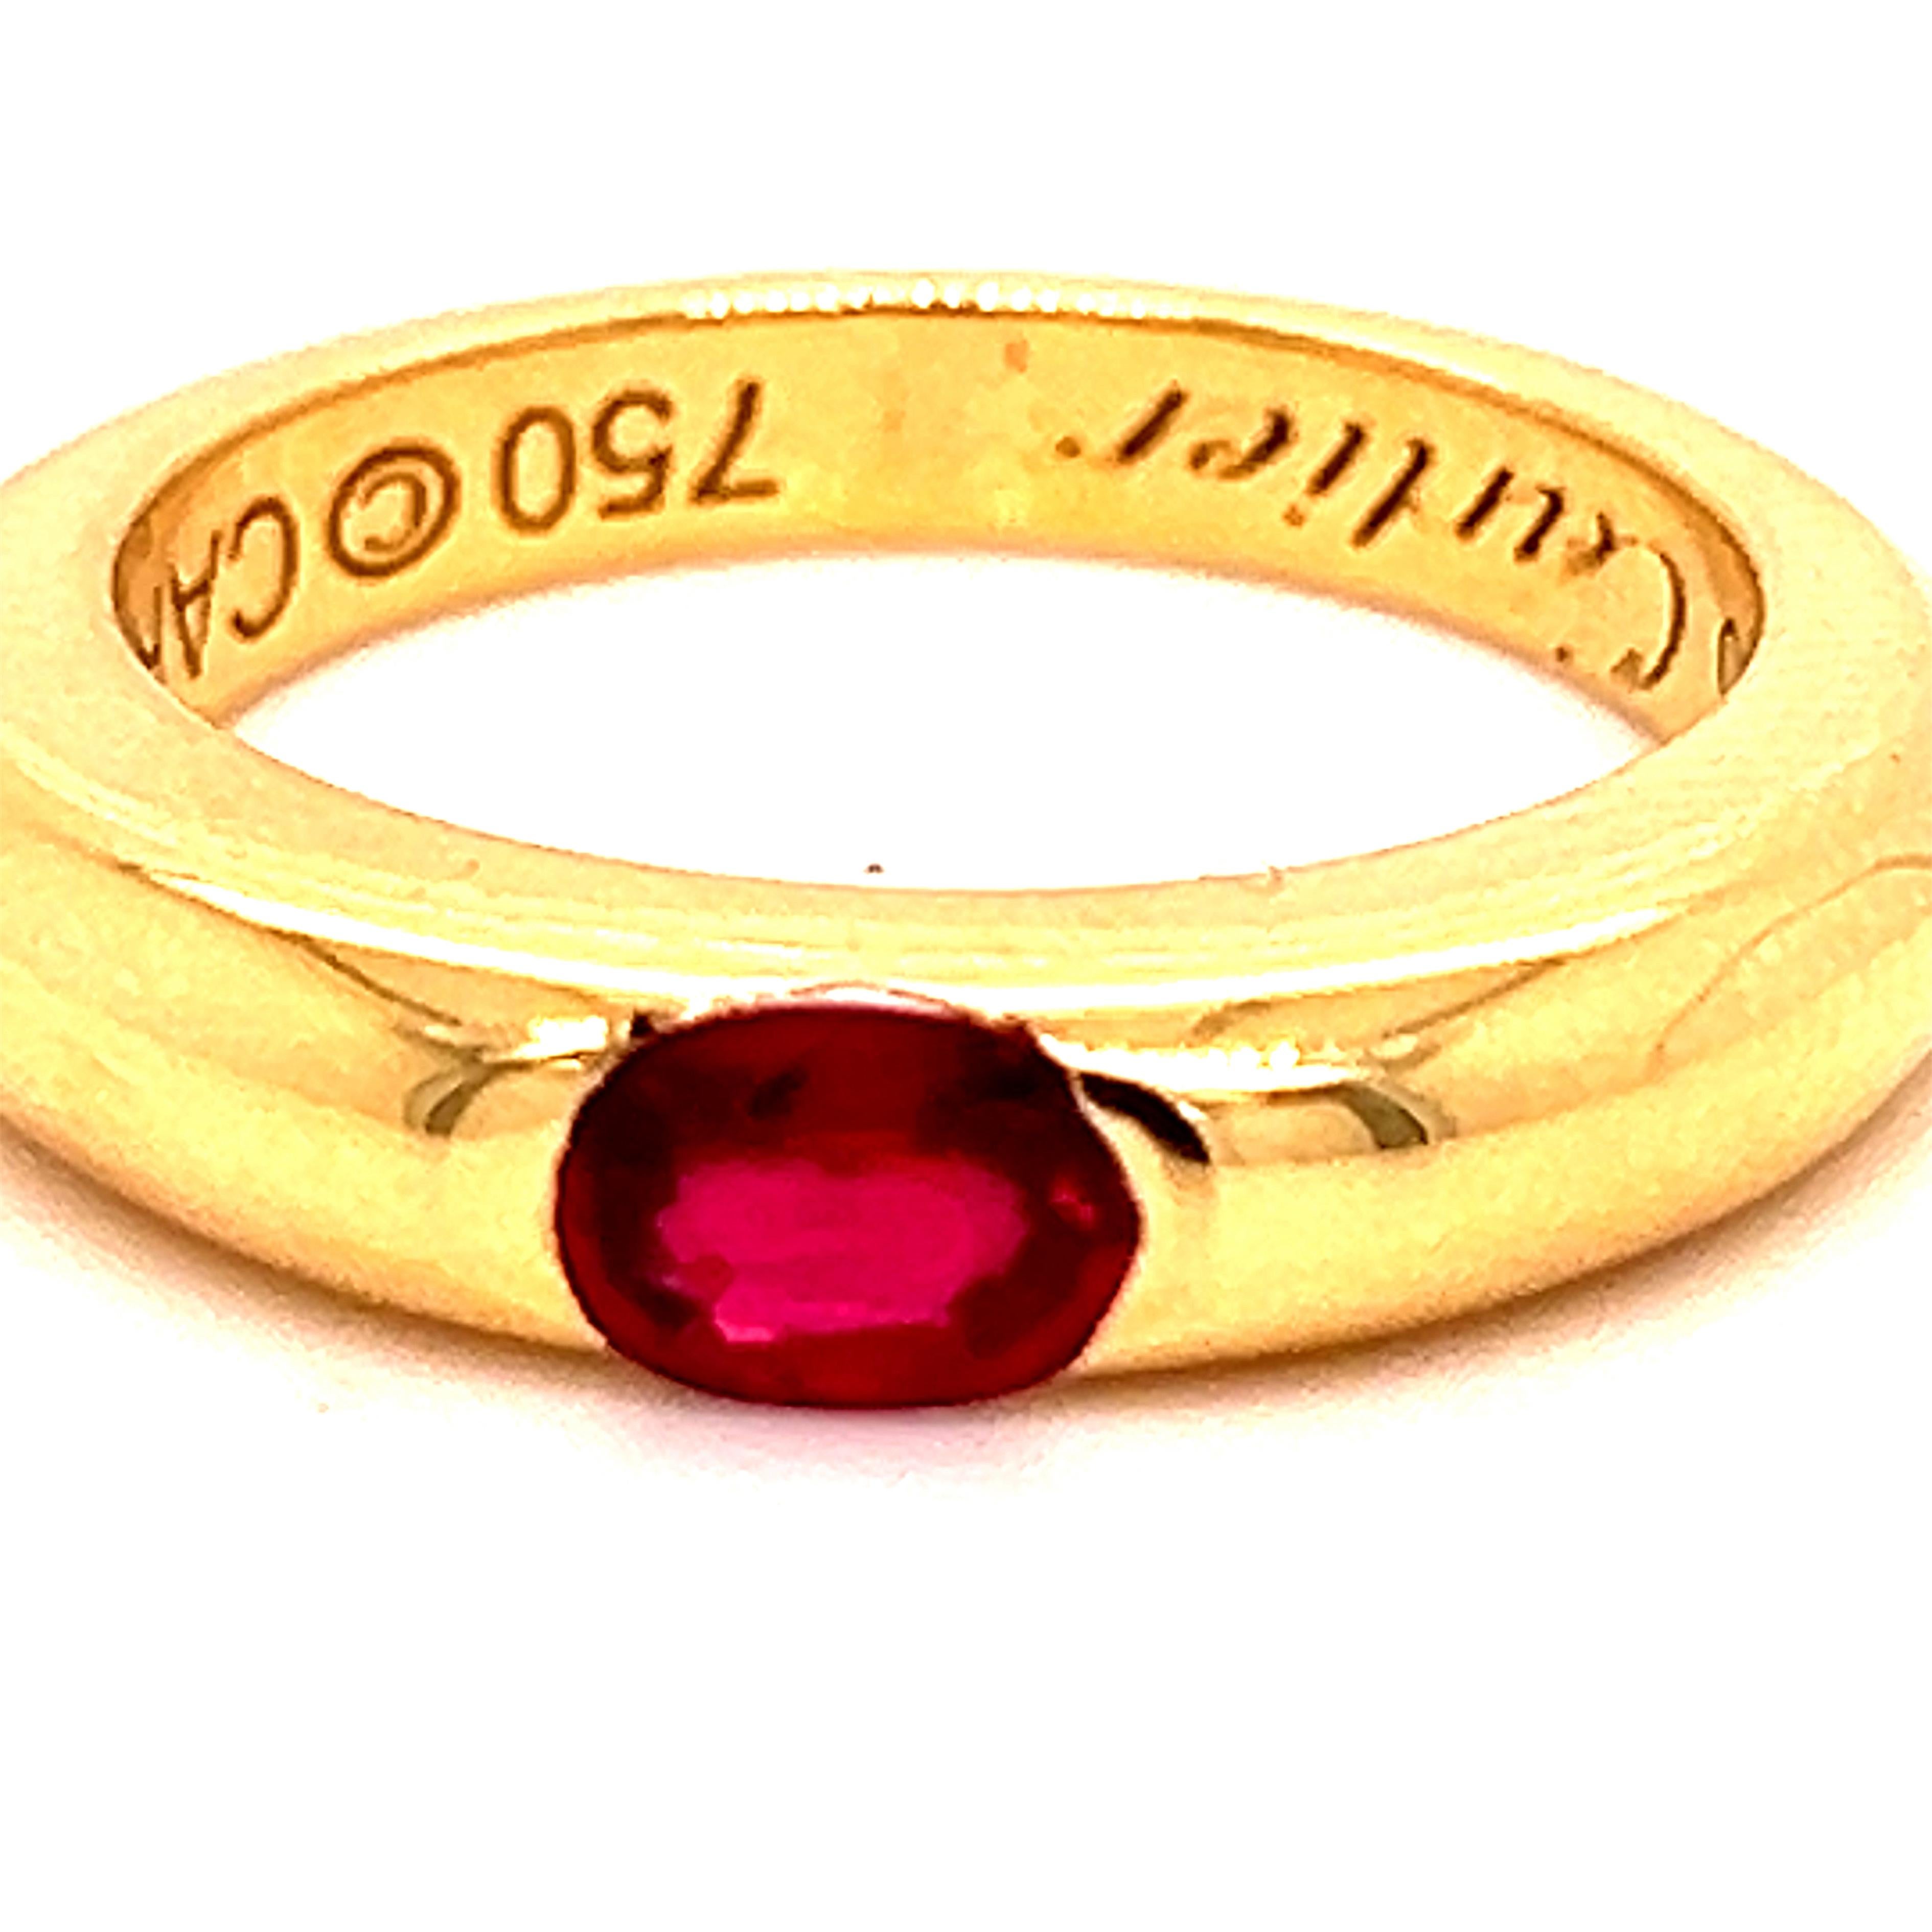 Original 1992, Cartier Oval Red Ruby 18Kt Gelbgold ikonischen Ellipse Ring, Französisch Größe 52, Us Größe 6.
Eine sehr wertvolle Cartier circa 0,60KT Top-Qualität ovalen roten Rubin in einem einfachen, alle Zeit tragbar 18kt Gelbgold Einstellung